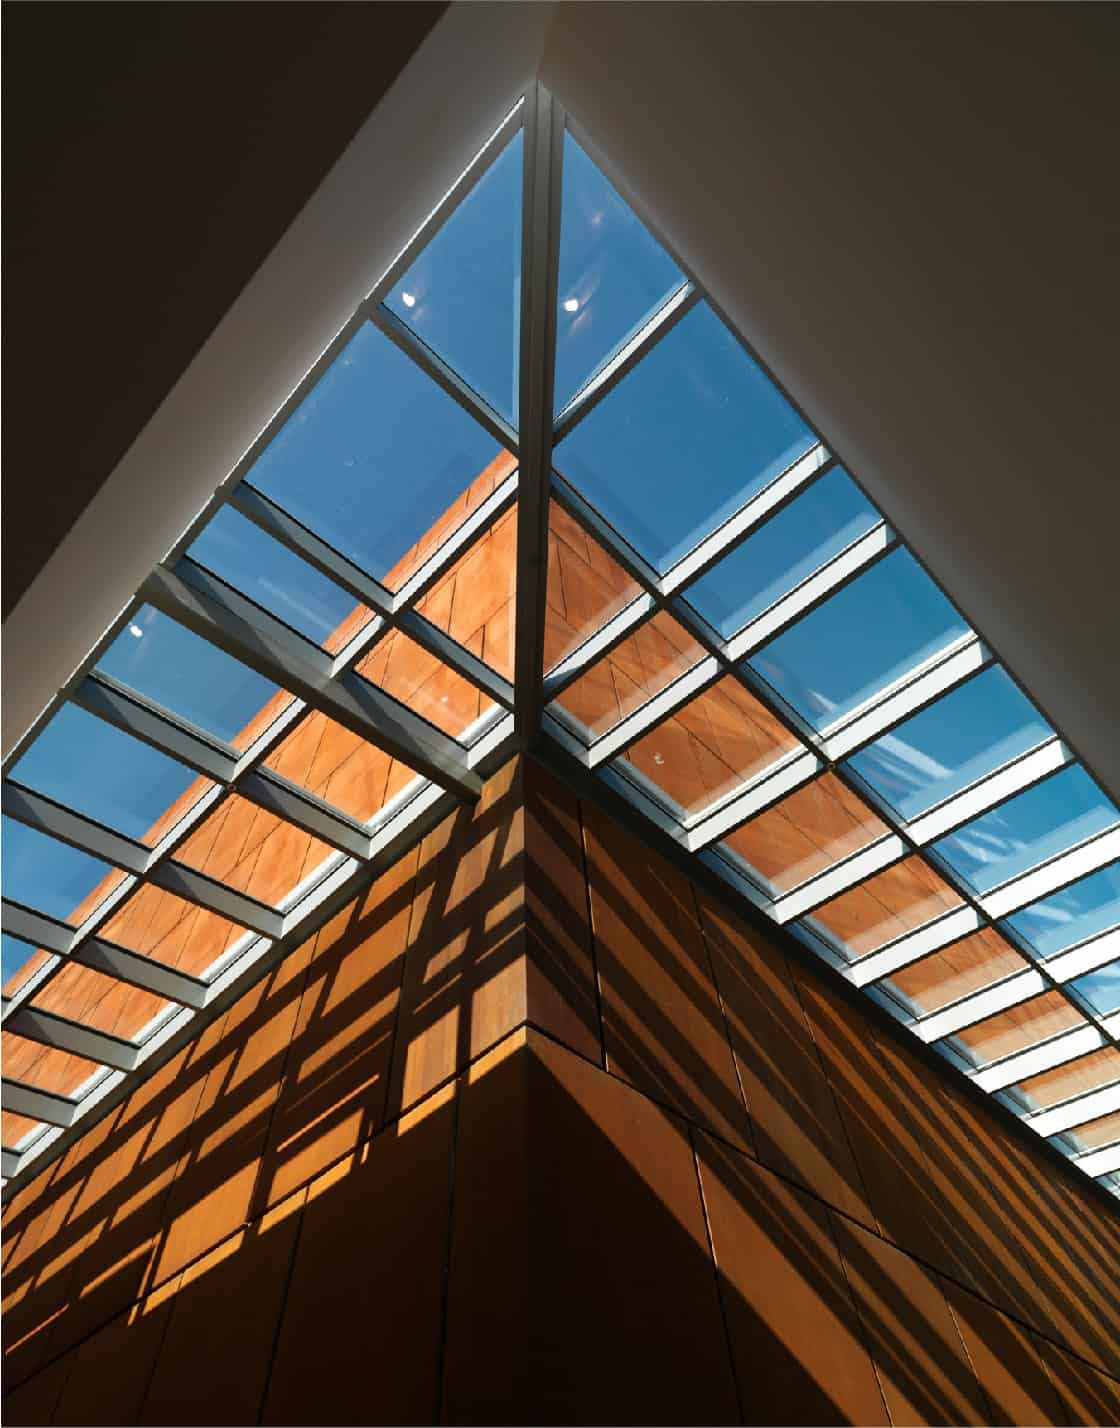 PRONI Building Atrium Glass Ceiling Photograph